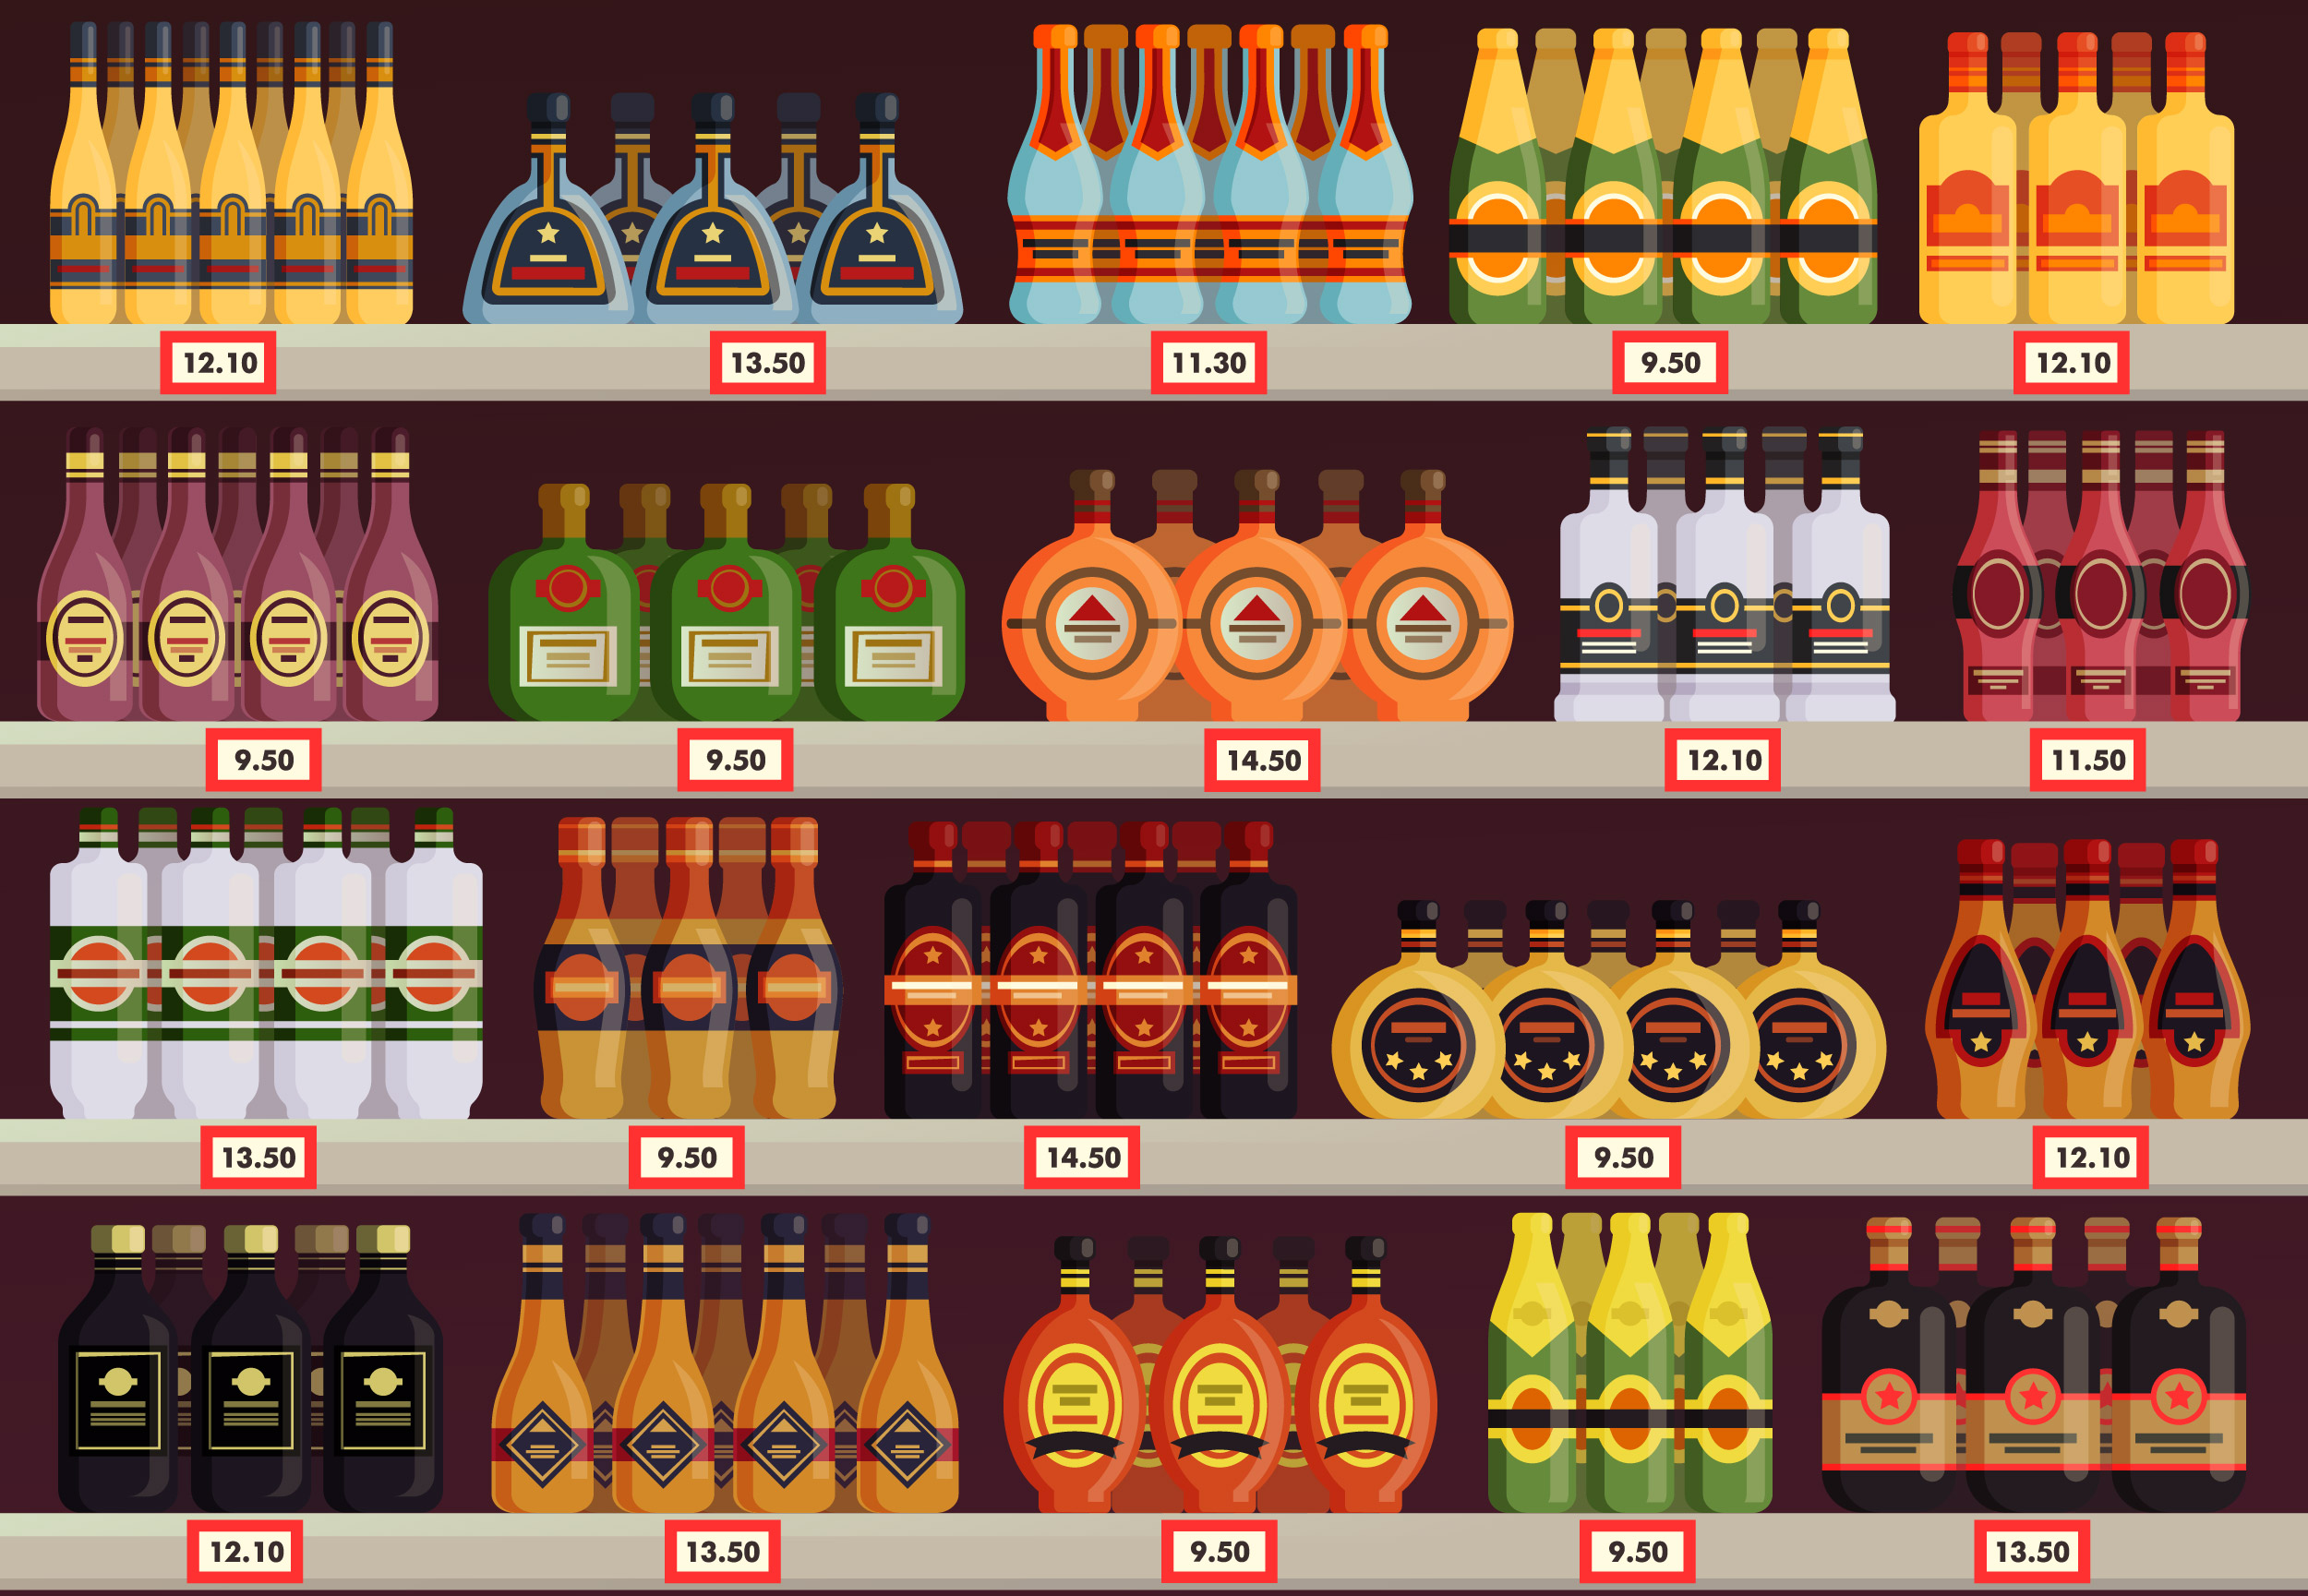 Positionnement des marques de boissons en supermarché